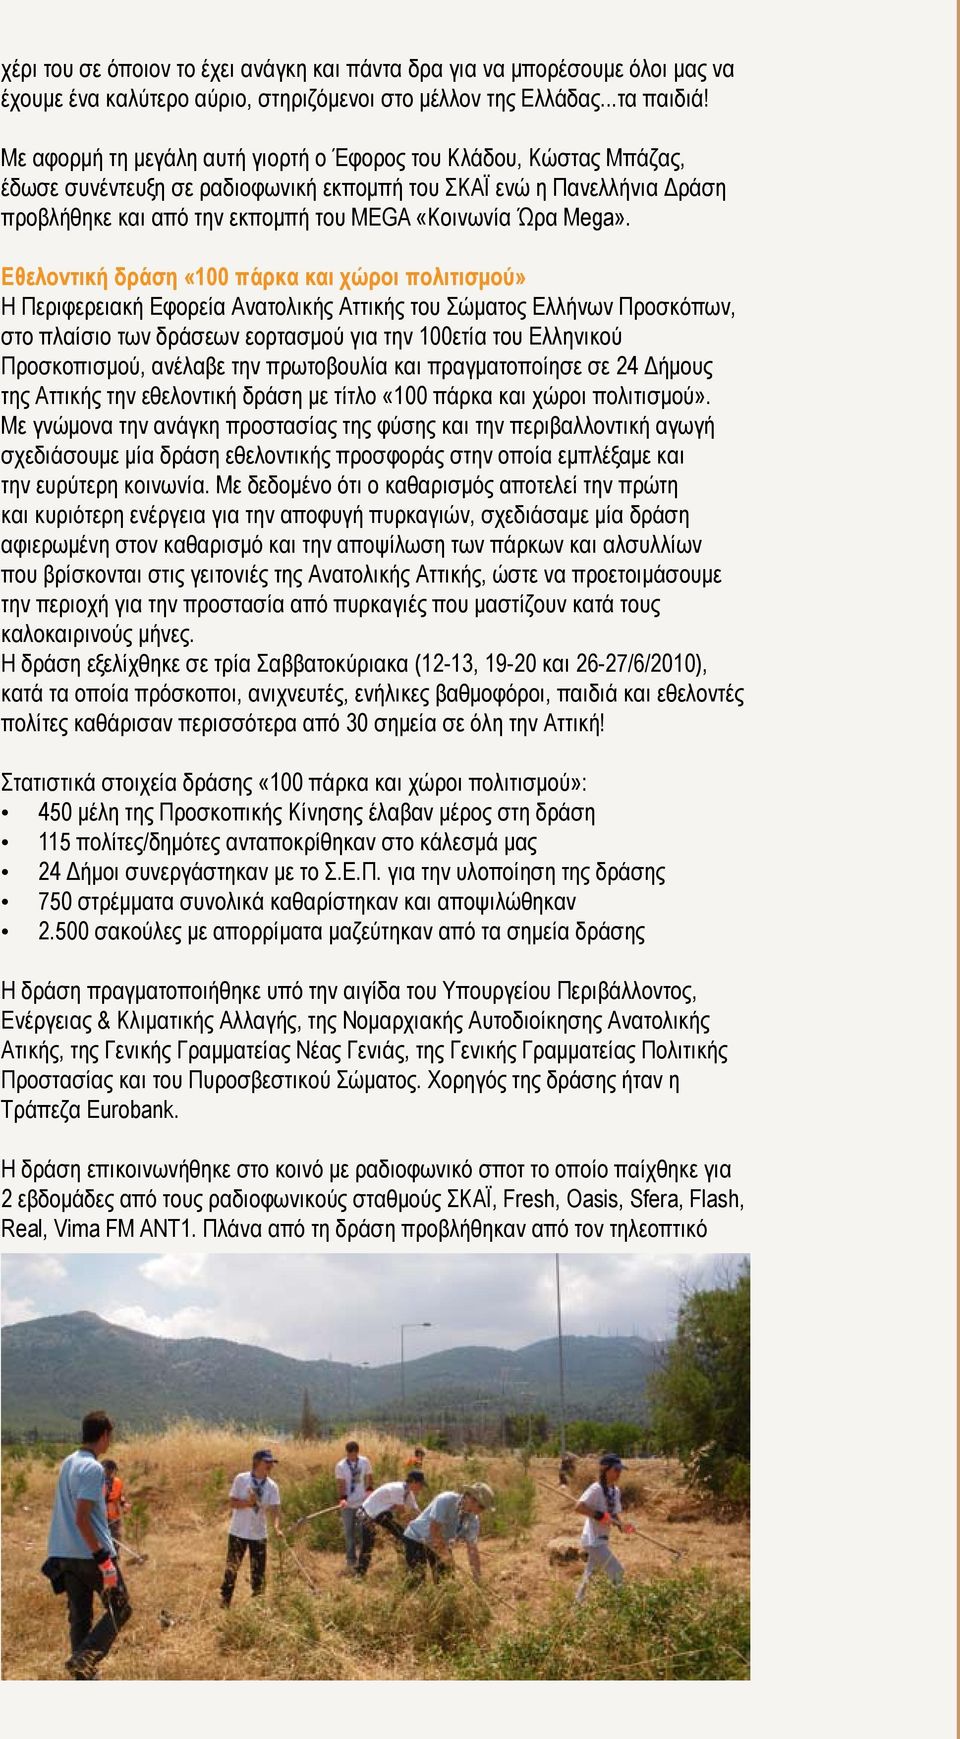 Εθελοντική δράση «100 πάρκα και χώροι πολιτισμού» Η Περιφερειακή Εφορεία Ανατολικής Αττικής του Σώματος Ελλήνων Προσκόπων, στο πλαίσιο των δράσεων εορτασμού για την 100ετία του Ελληνικού